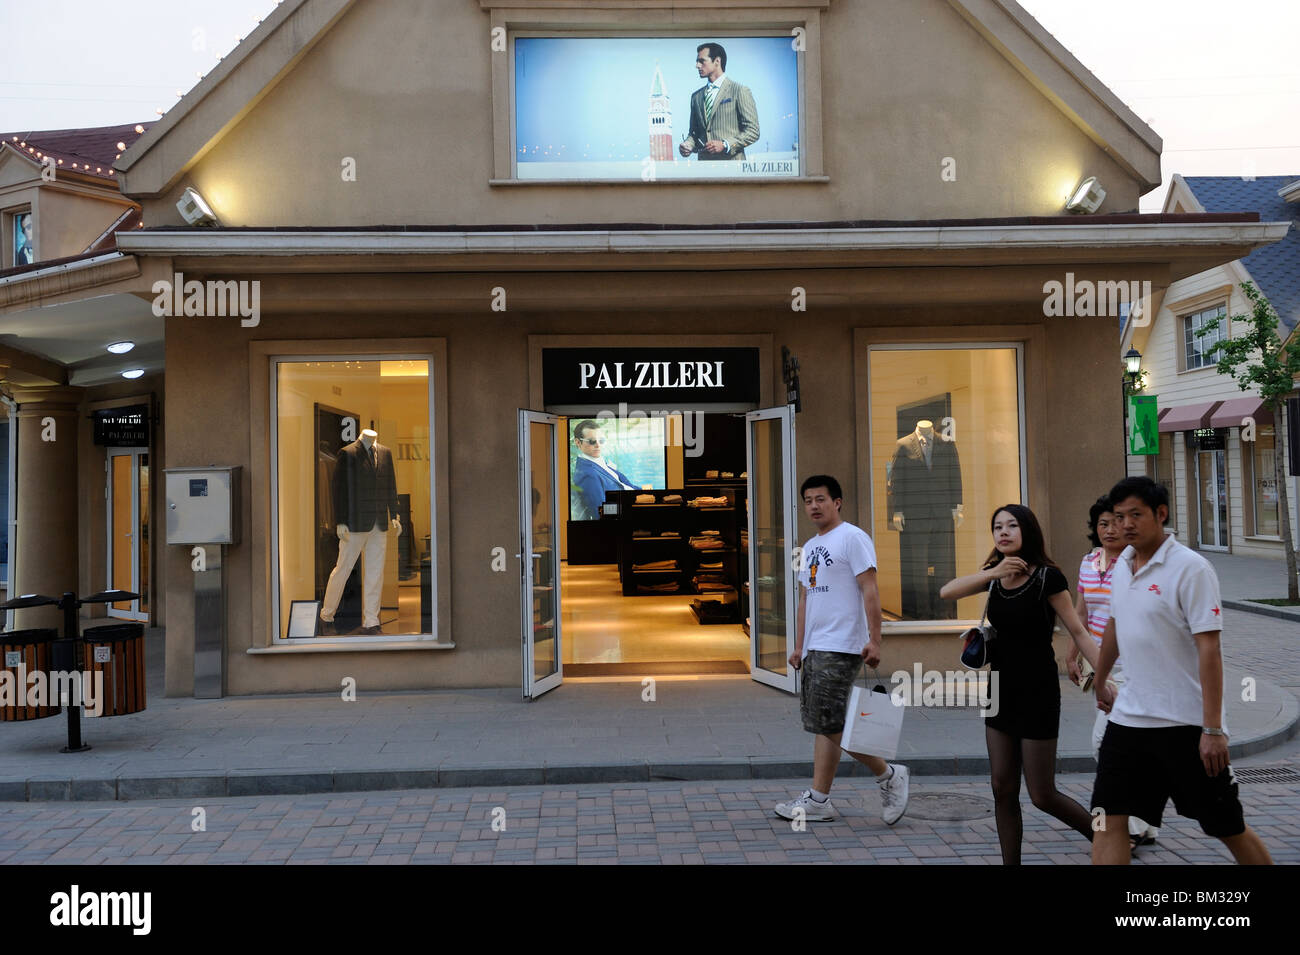 Les acheteurs chinois passé à pied Italie marque Pal Zieri store à Beijing Scitech Premium Outlet Mall, à Beijing, en Chine. 15-mai-2010 Banque D'Images